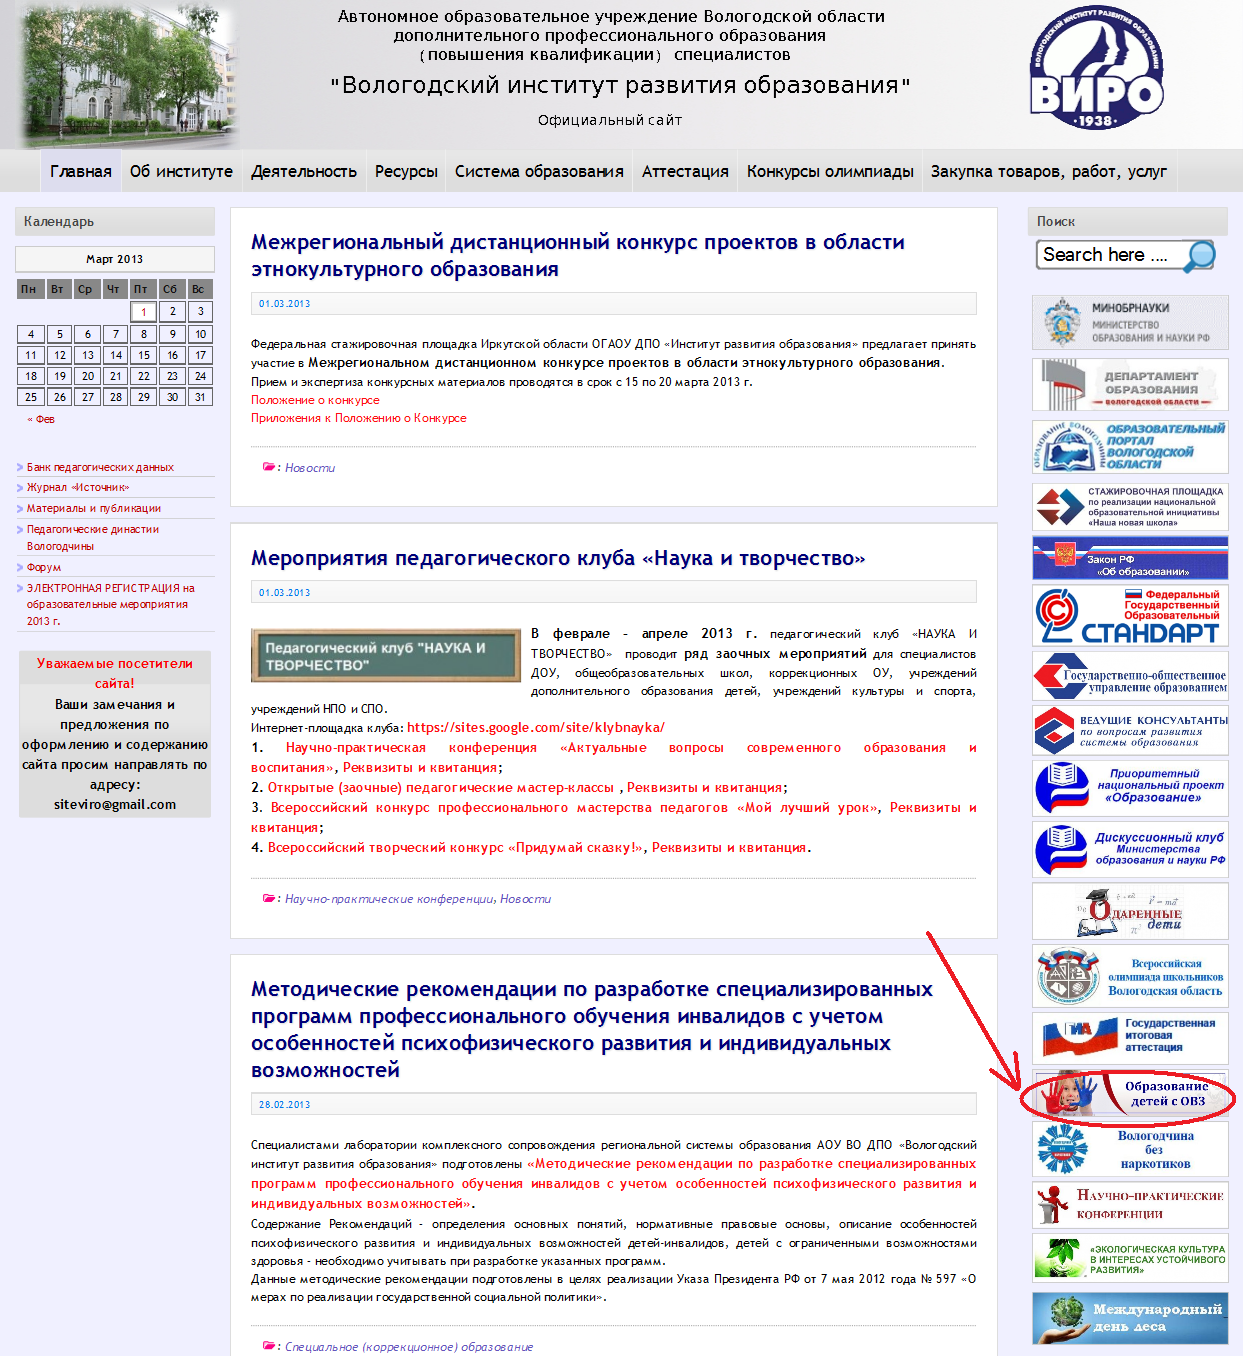 Департамент образования Вологодской области. Сайт официального портала вологодской